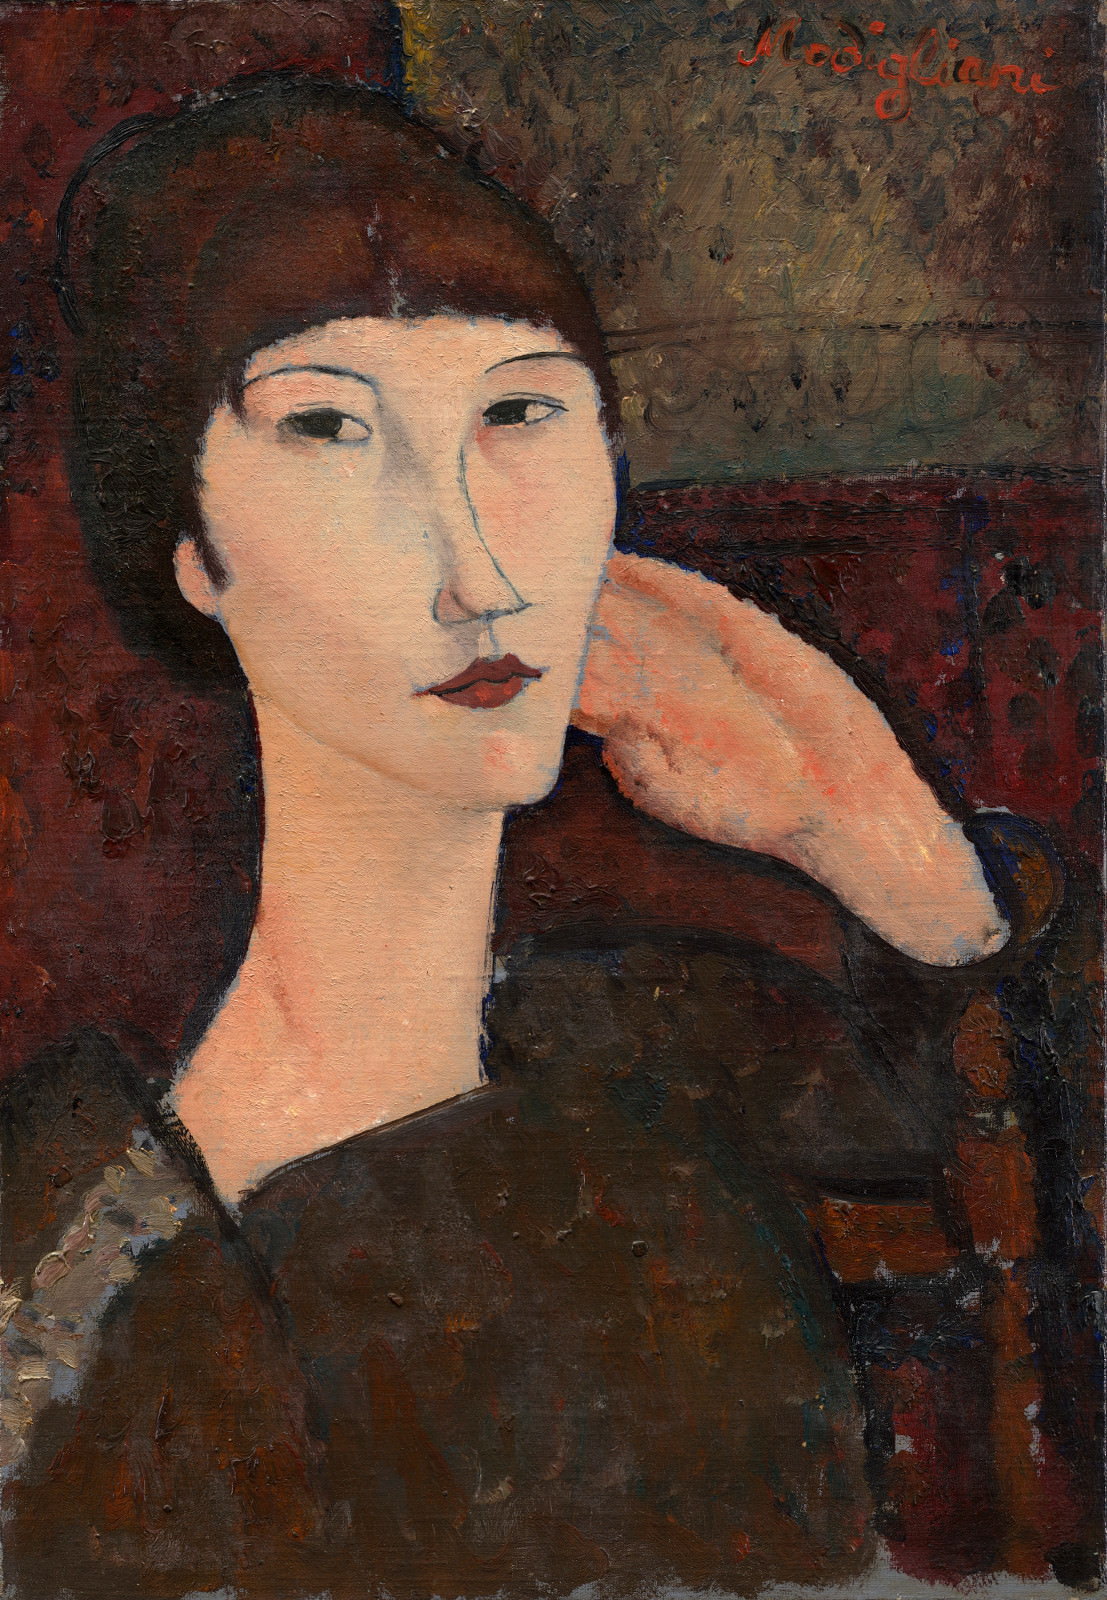 Fig. 8 - Adrienne (Mujer con explosiones), Amedeo Modigliani, 1917, El aceite de linaza en, 55.3 x 38.1 cm. National Gallery of Art, Washington. Colección de Chester Dale.